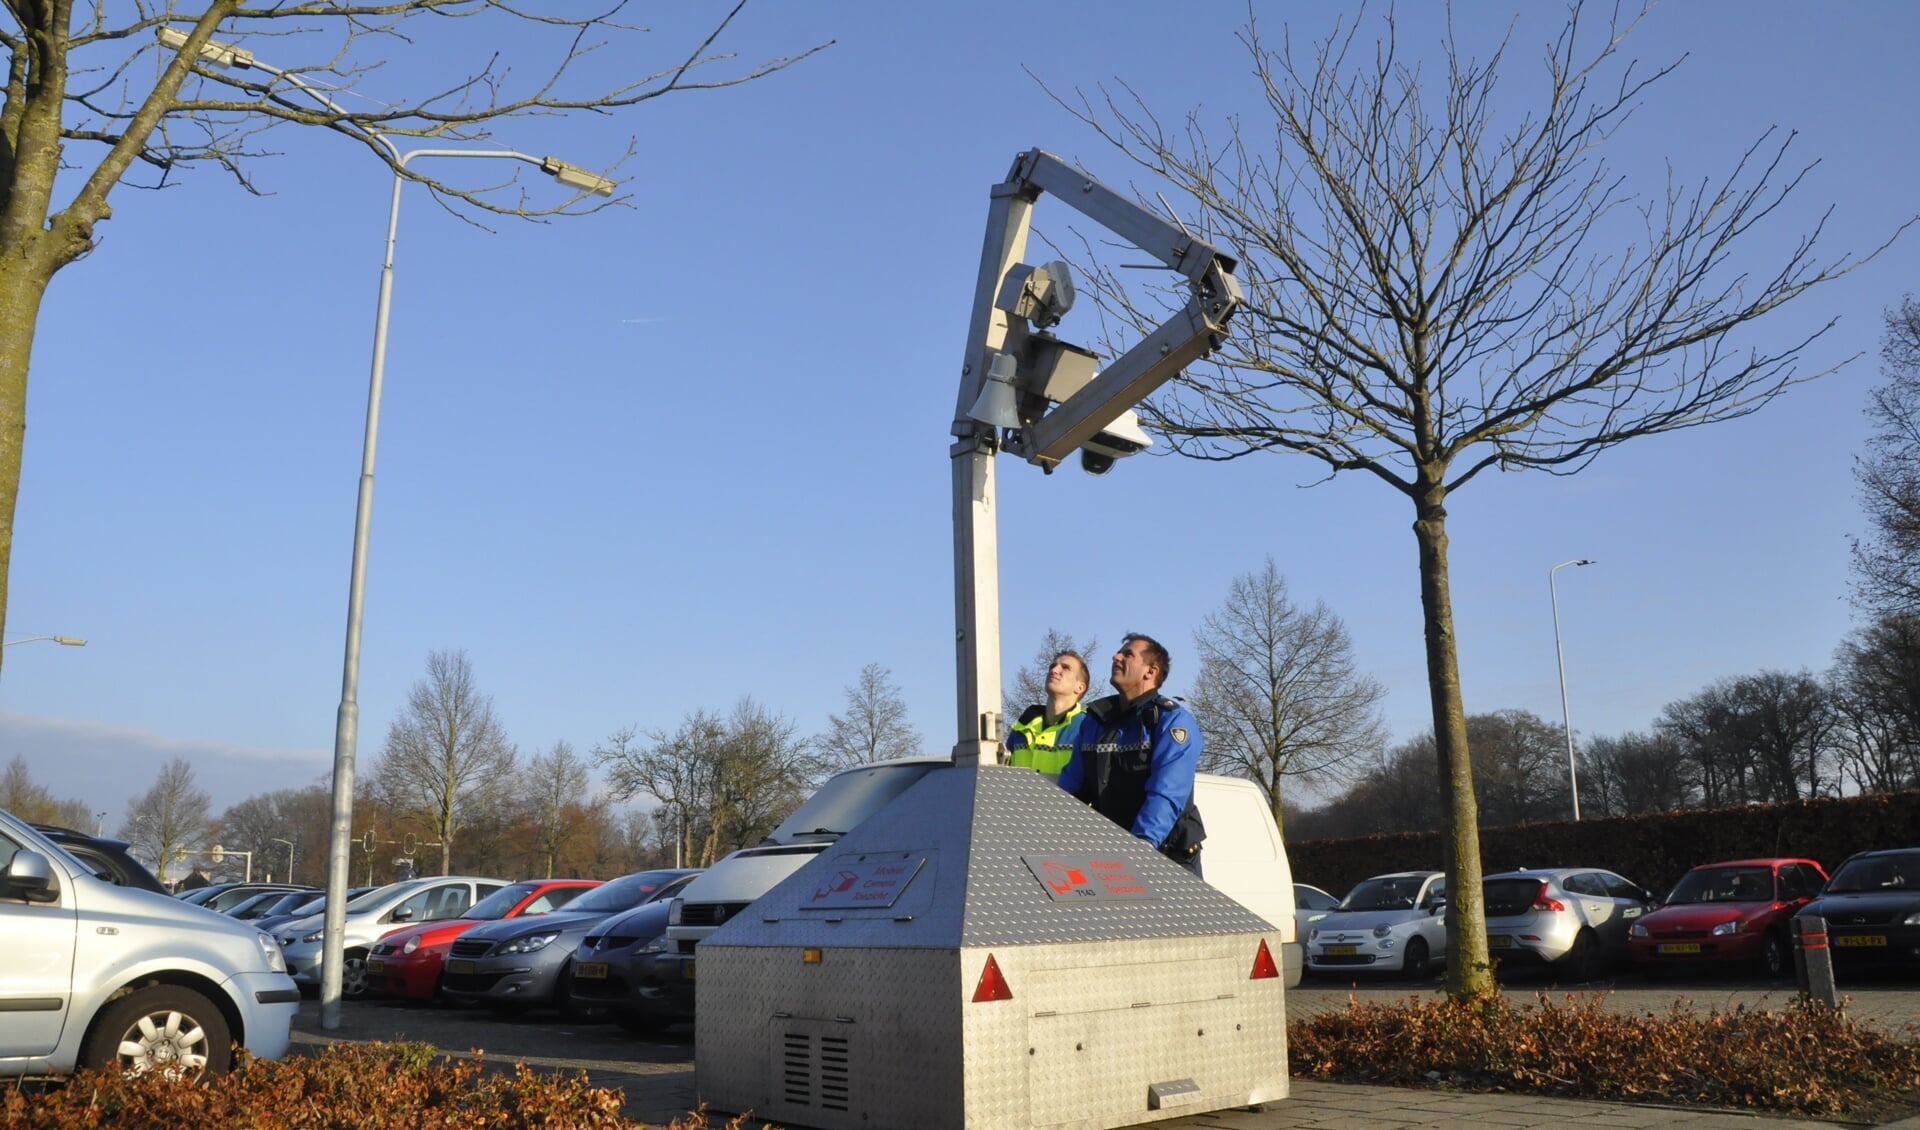 De mobiele camera van de gemeente Barneveld werd eerder ingezet bij parkeerterrein De Vetkamp in Barneveld.